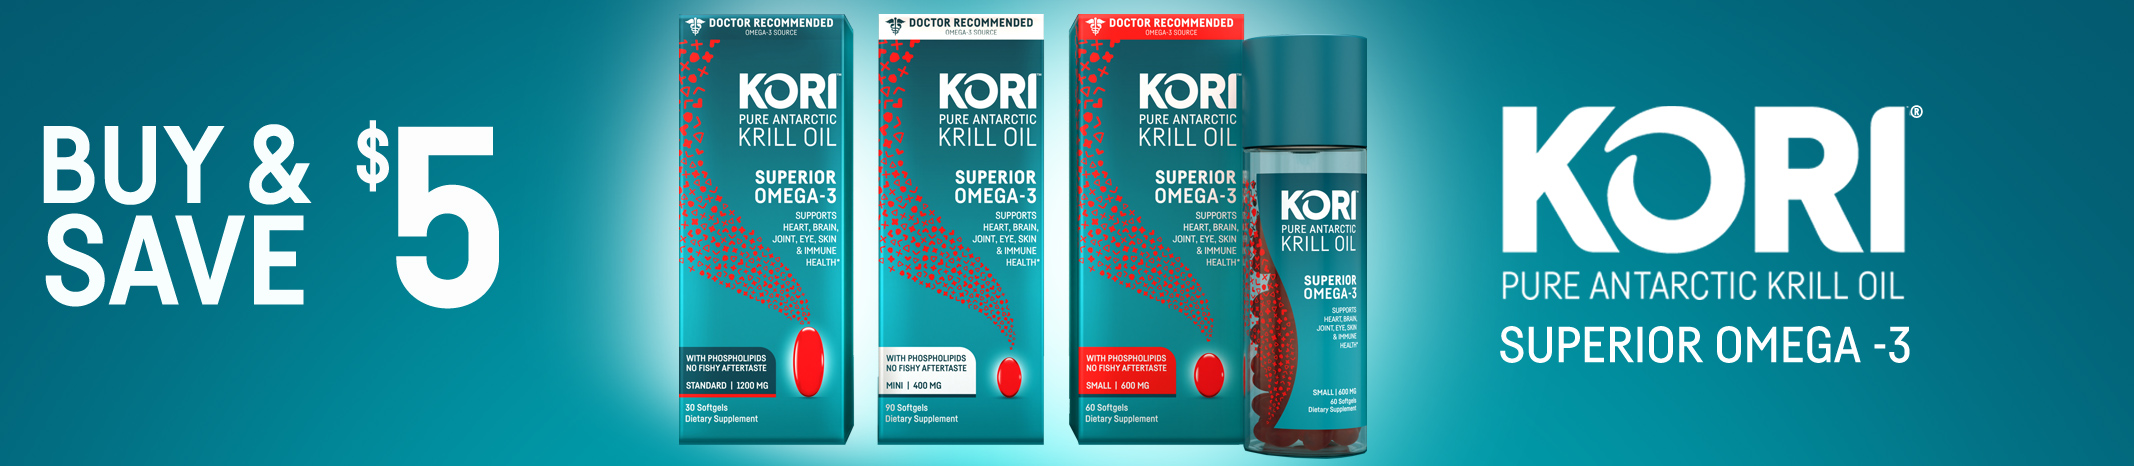 kori-krill-oil